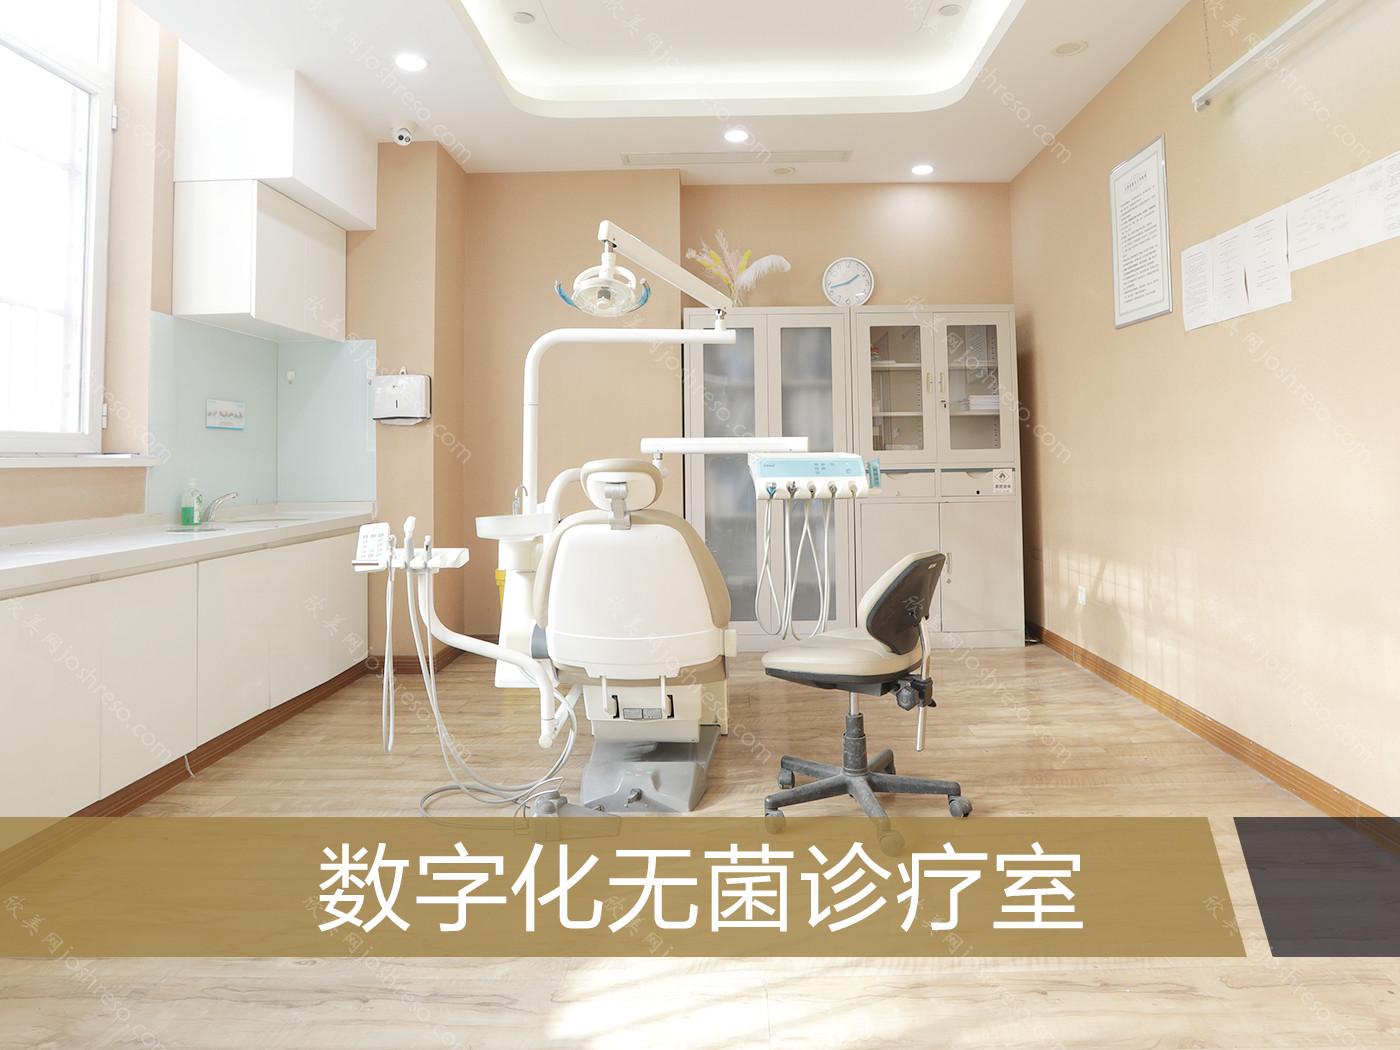 2022北京口腔医院种牙价格公布!告诉你北京种牙哪里比较好